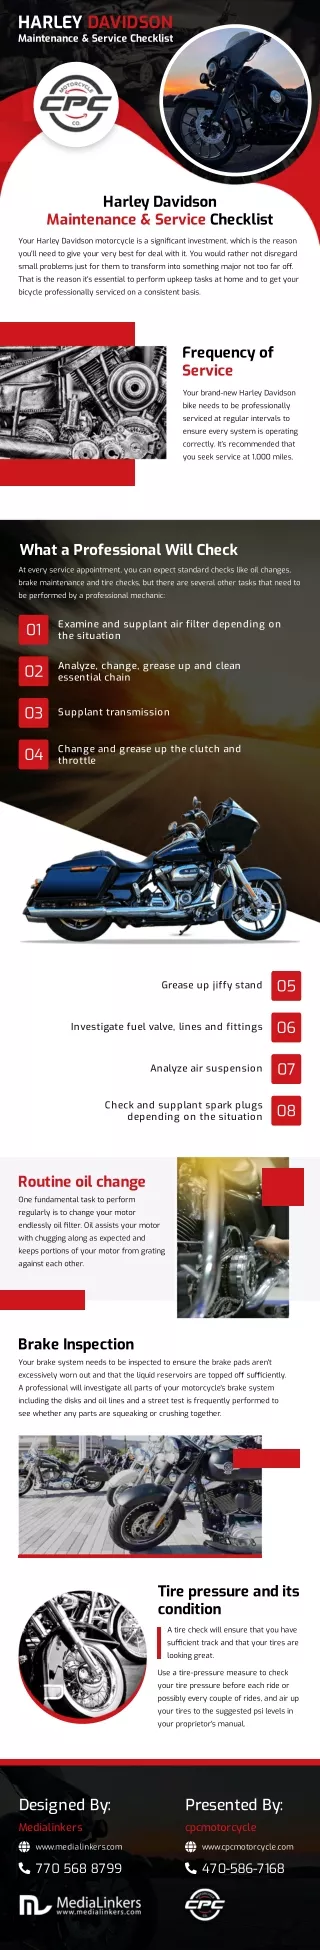 Harley Davidson Maintenance & Service Checklist